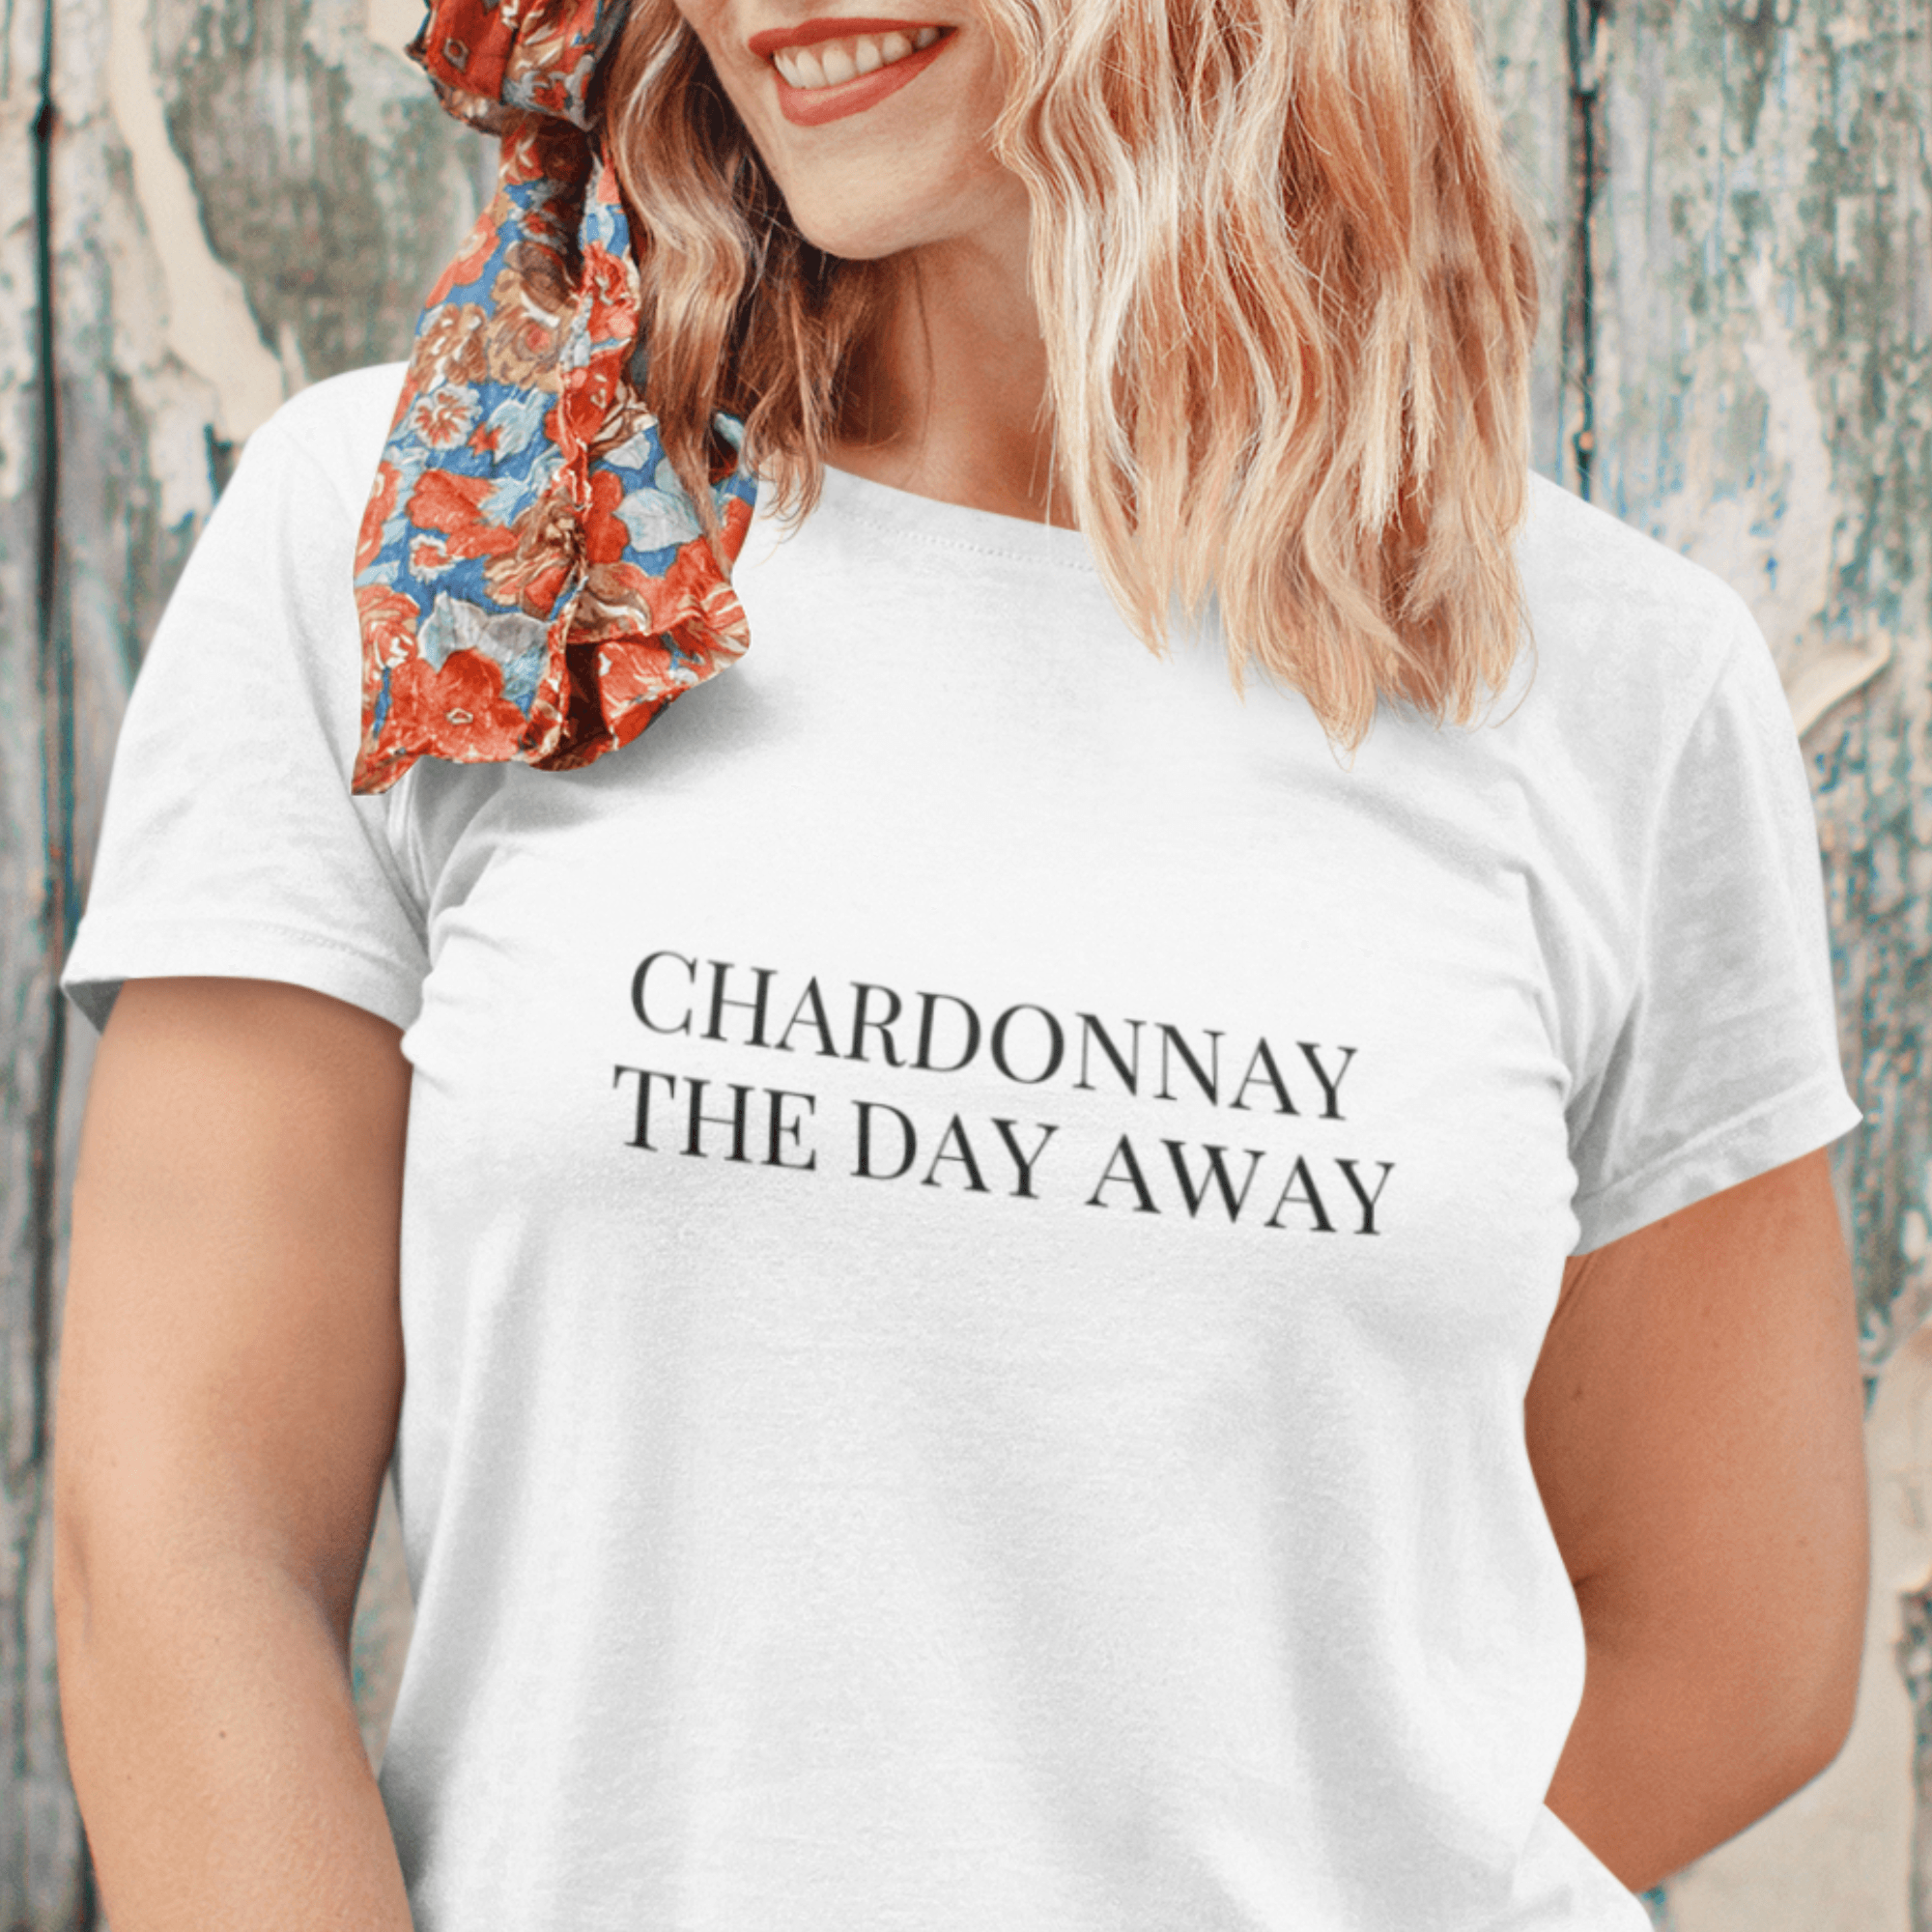 CHARDONNAY THE DAY AWAY - Damen Premiumshirt - einschenken24.de